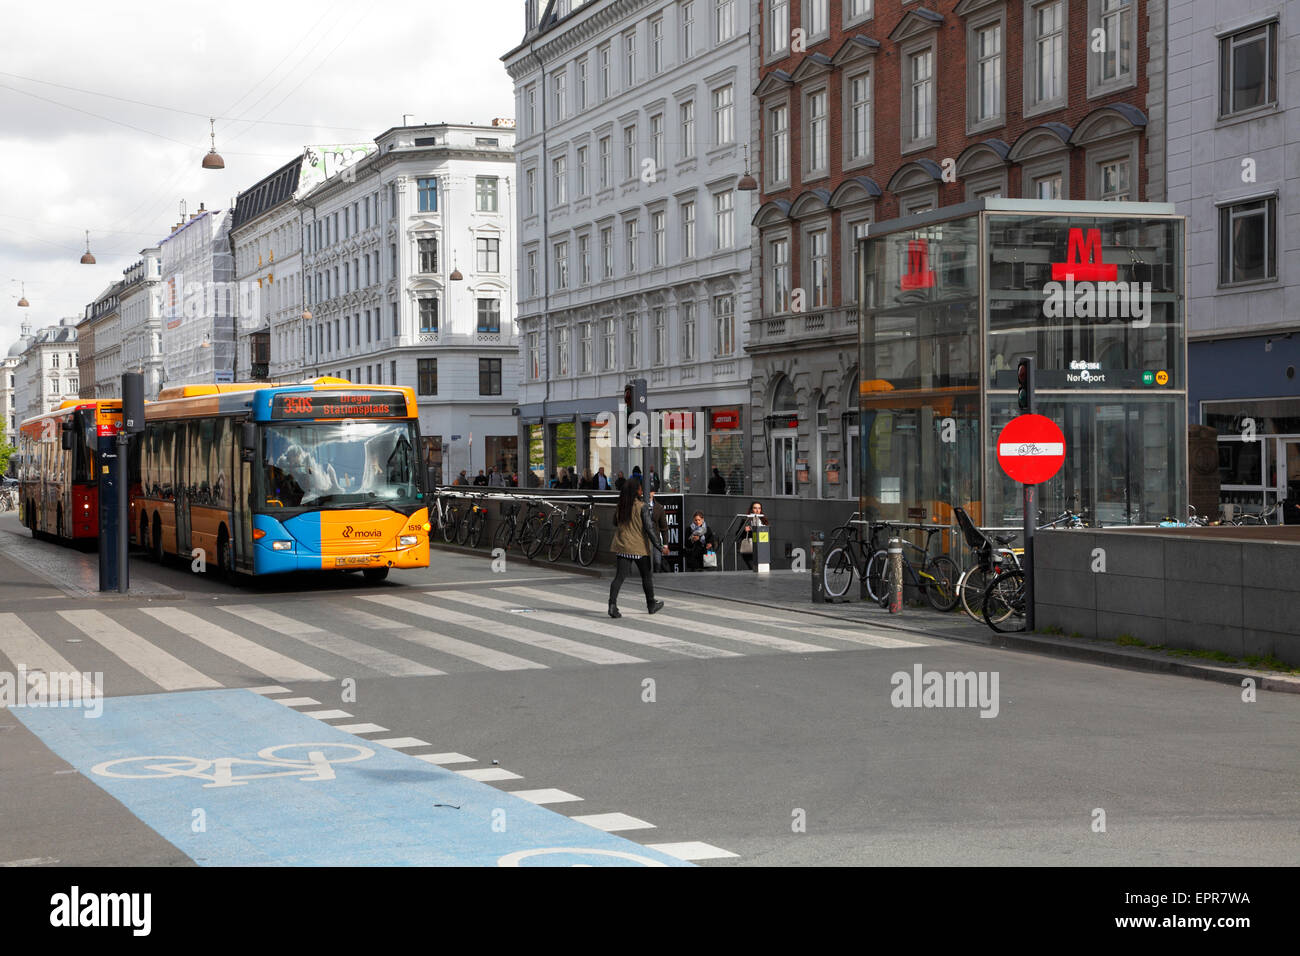 Il sommerso Nørreport Stazione della Metropolitana a Frederiksborggade nel centro di Copenhagen. Città e autobus express al semaforo. La Danimarca. Street view. Foto Stock